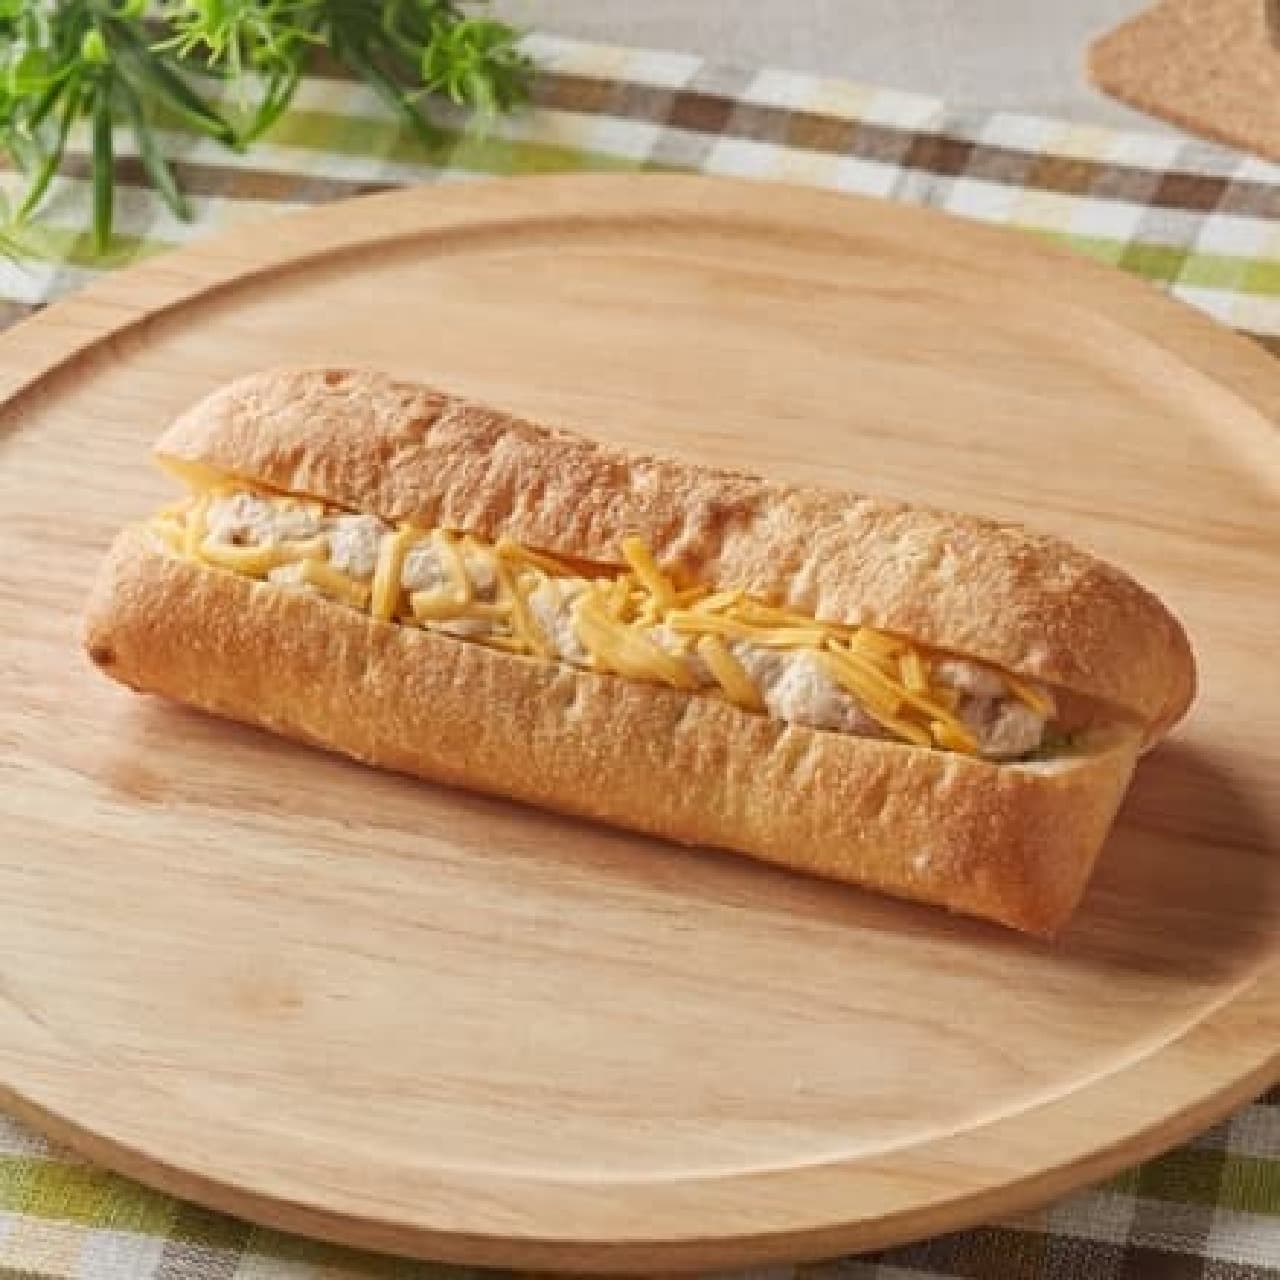 FamilyMart "Hot Sandwich Tuna and Cheddar"